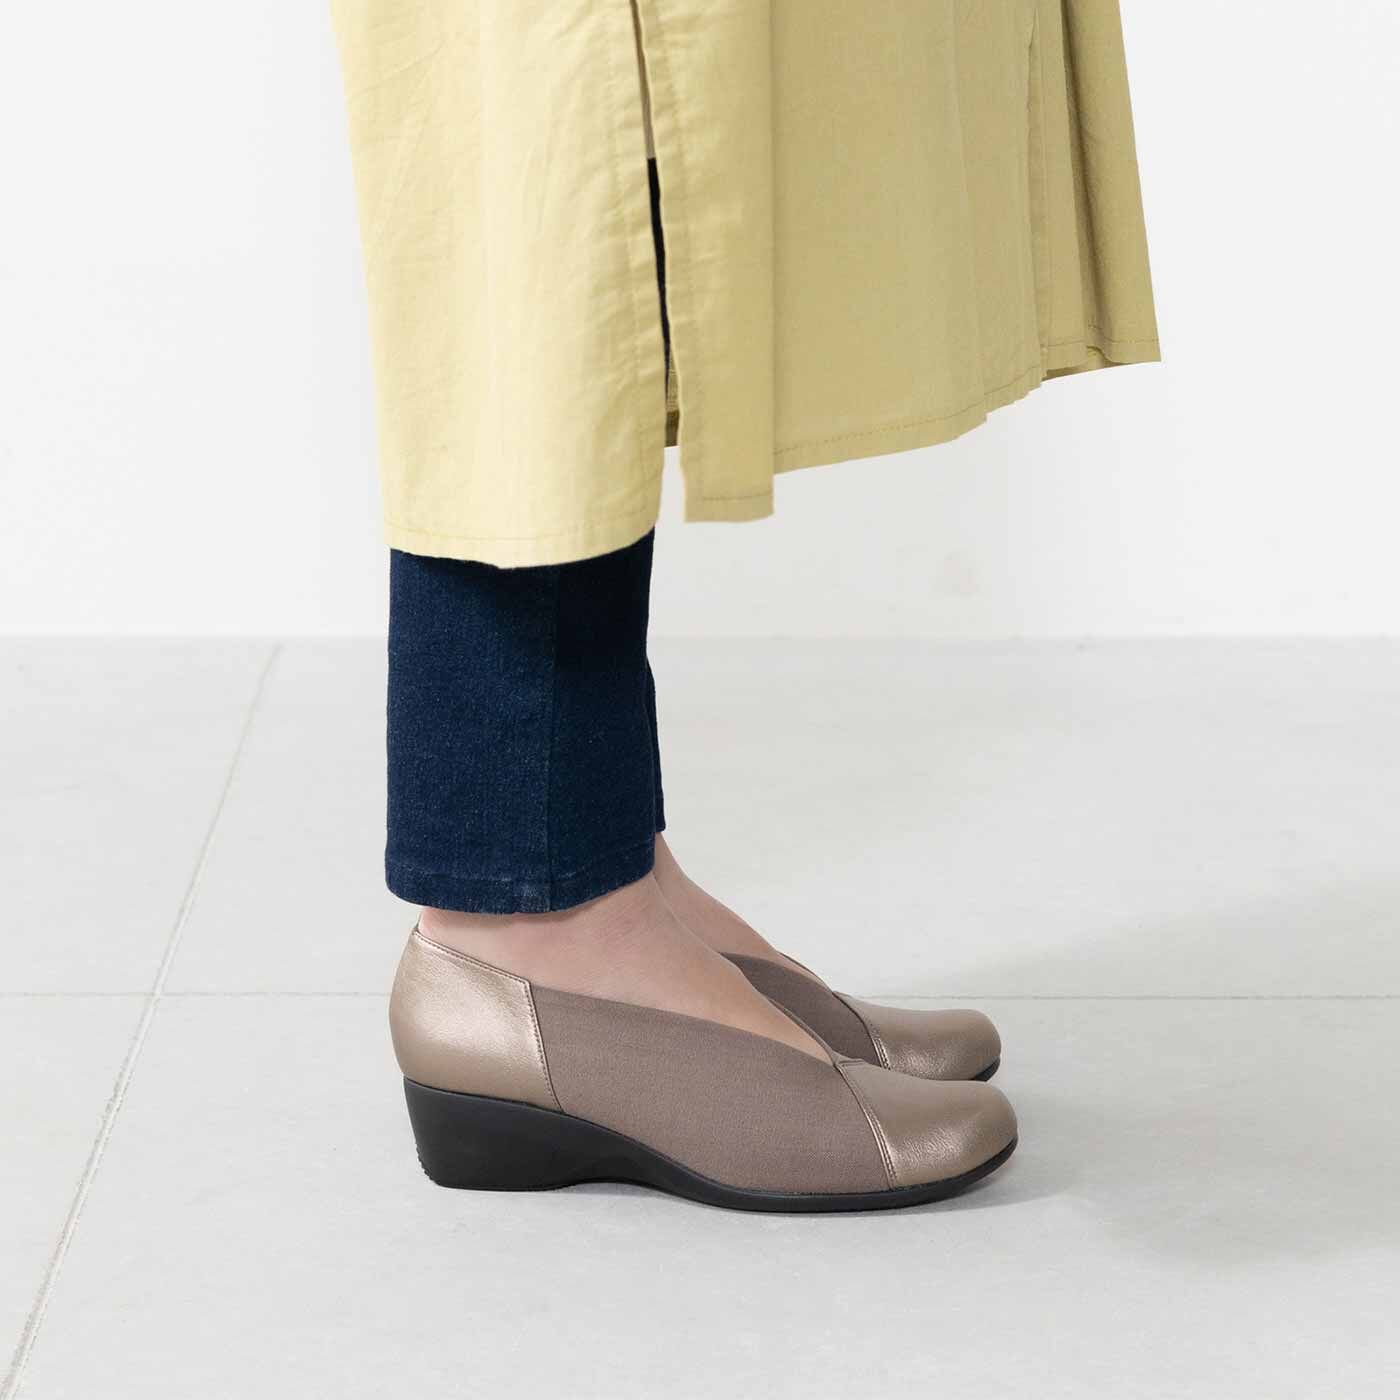 L'AMIPLUS|広幅甲高さんもらくな履き心地 足もと軽やか サイドストレッチパンプスの会|SIDE